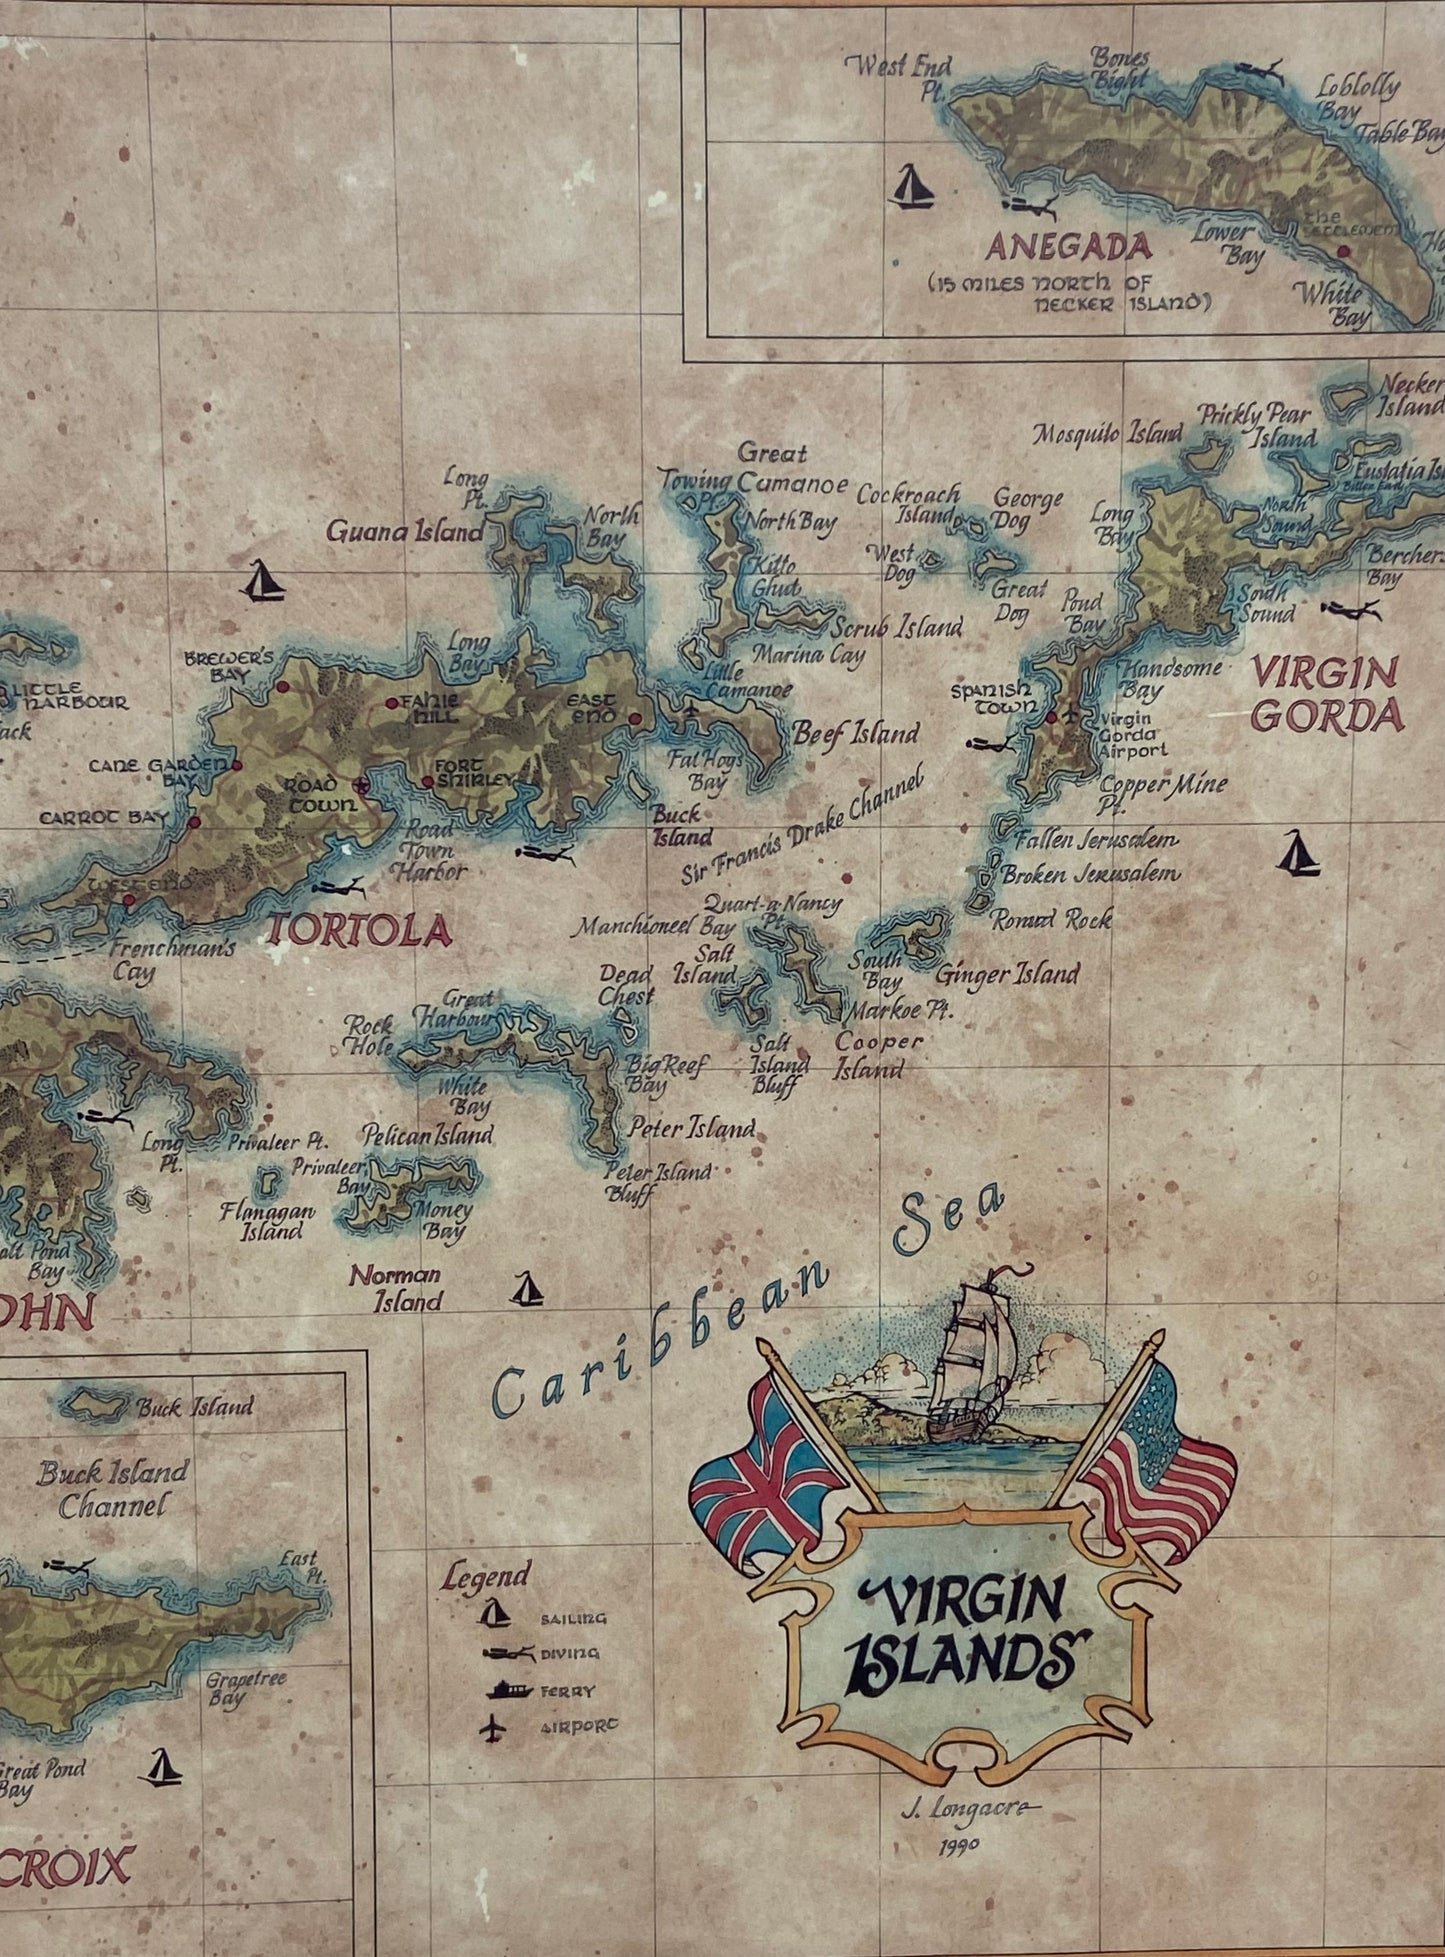 MAP OF THE VIRGIN ISLANDS